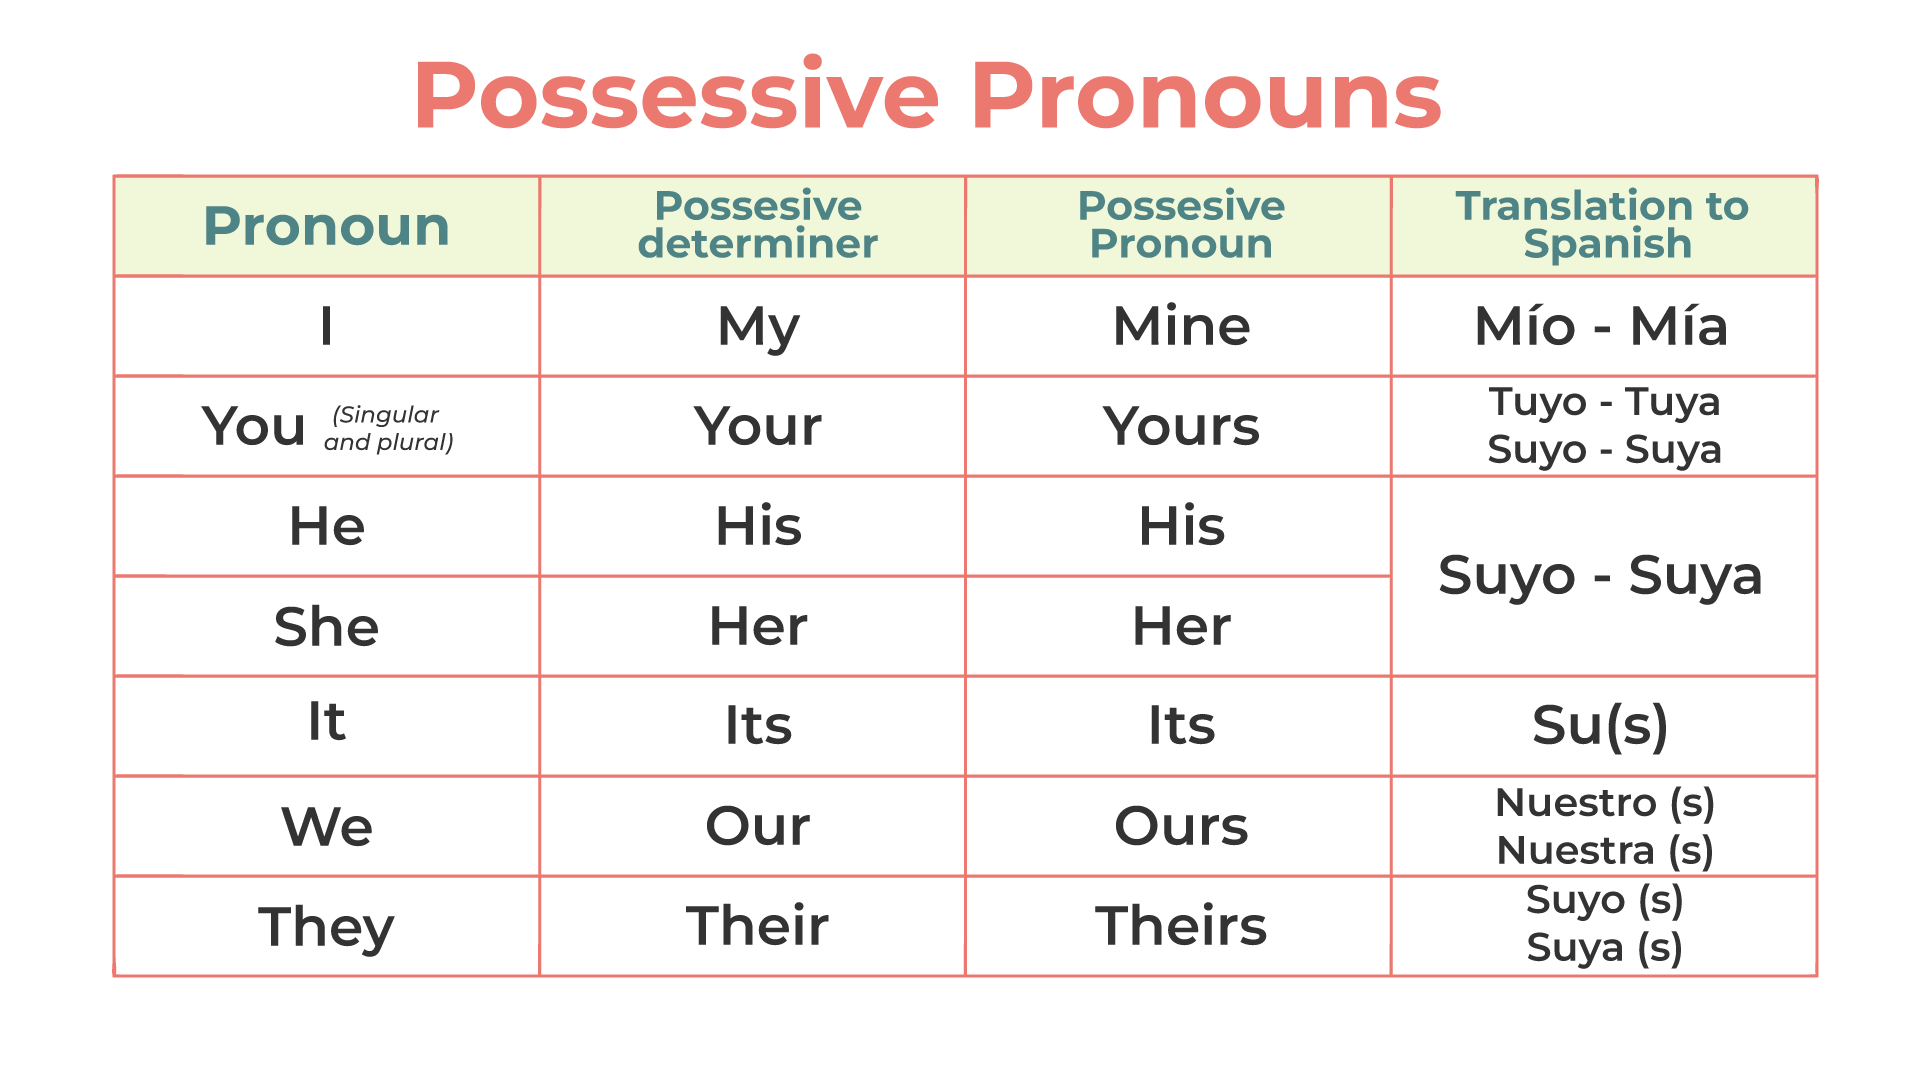 Tabla de pronombres posesivos en inglés, incluyendo determinantes posesivos